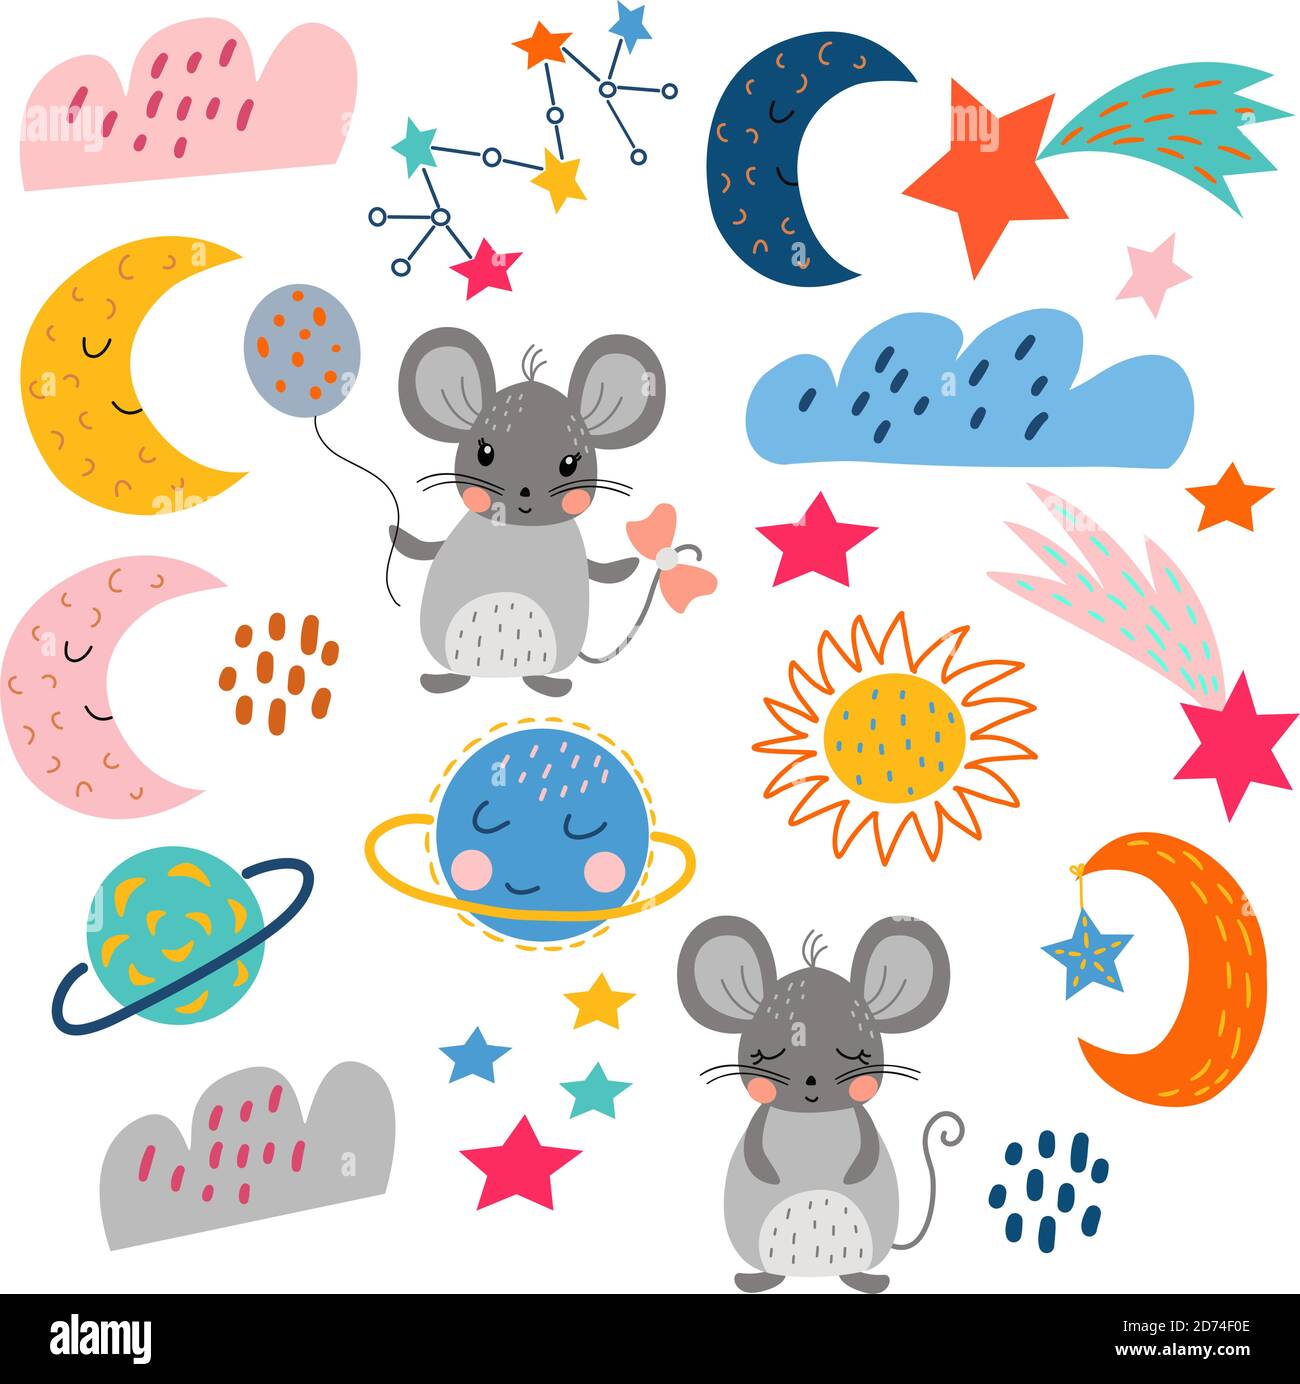 Set von niedlichen Cartoon-Elemente auf weißem Hintergrund, in Vektorgrafiken, schlafende Mäuse, Mond, Sterne, Wolken. Für die Gestaltung von Postern, Postkarten Stock Vektor